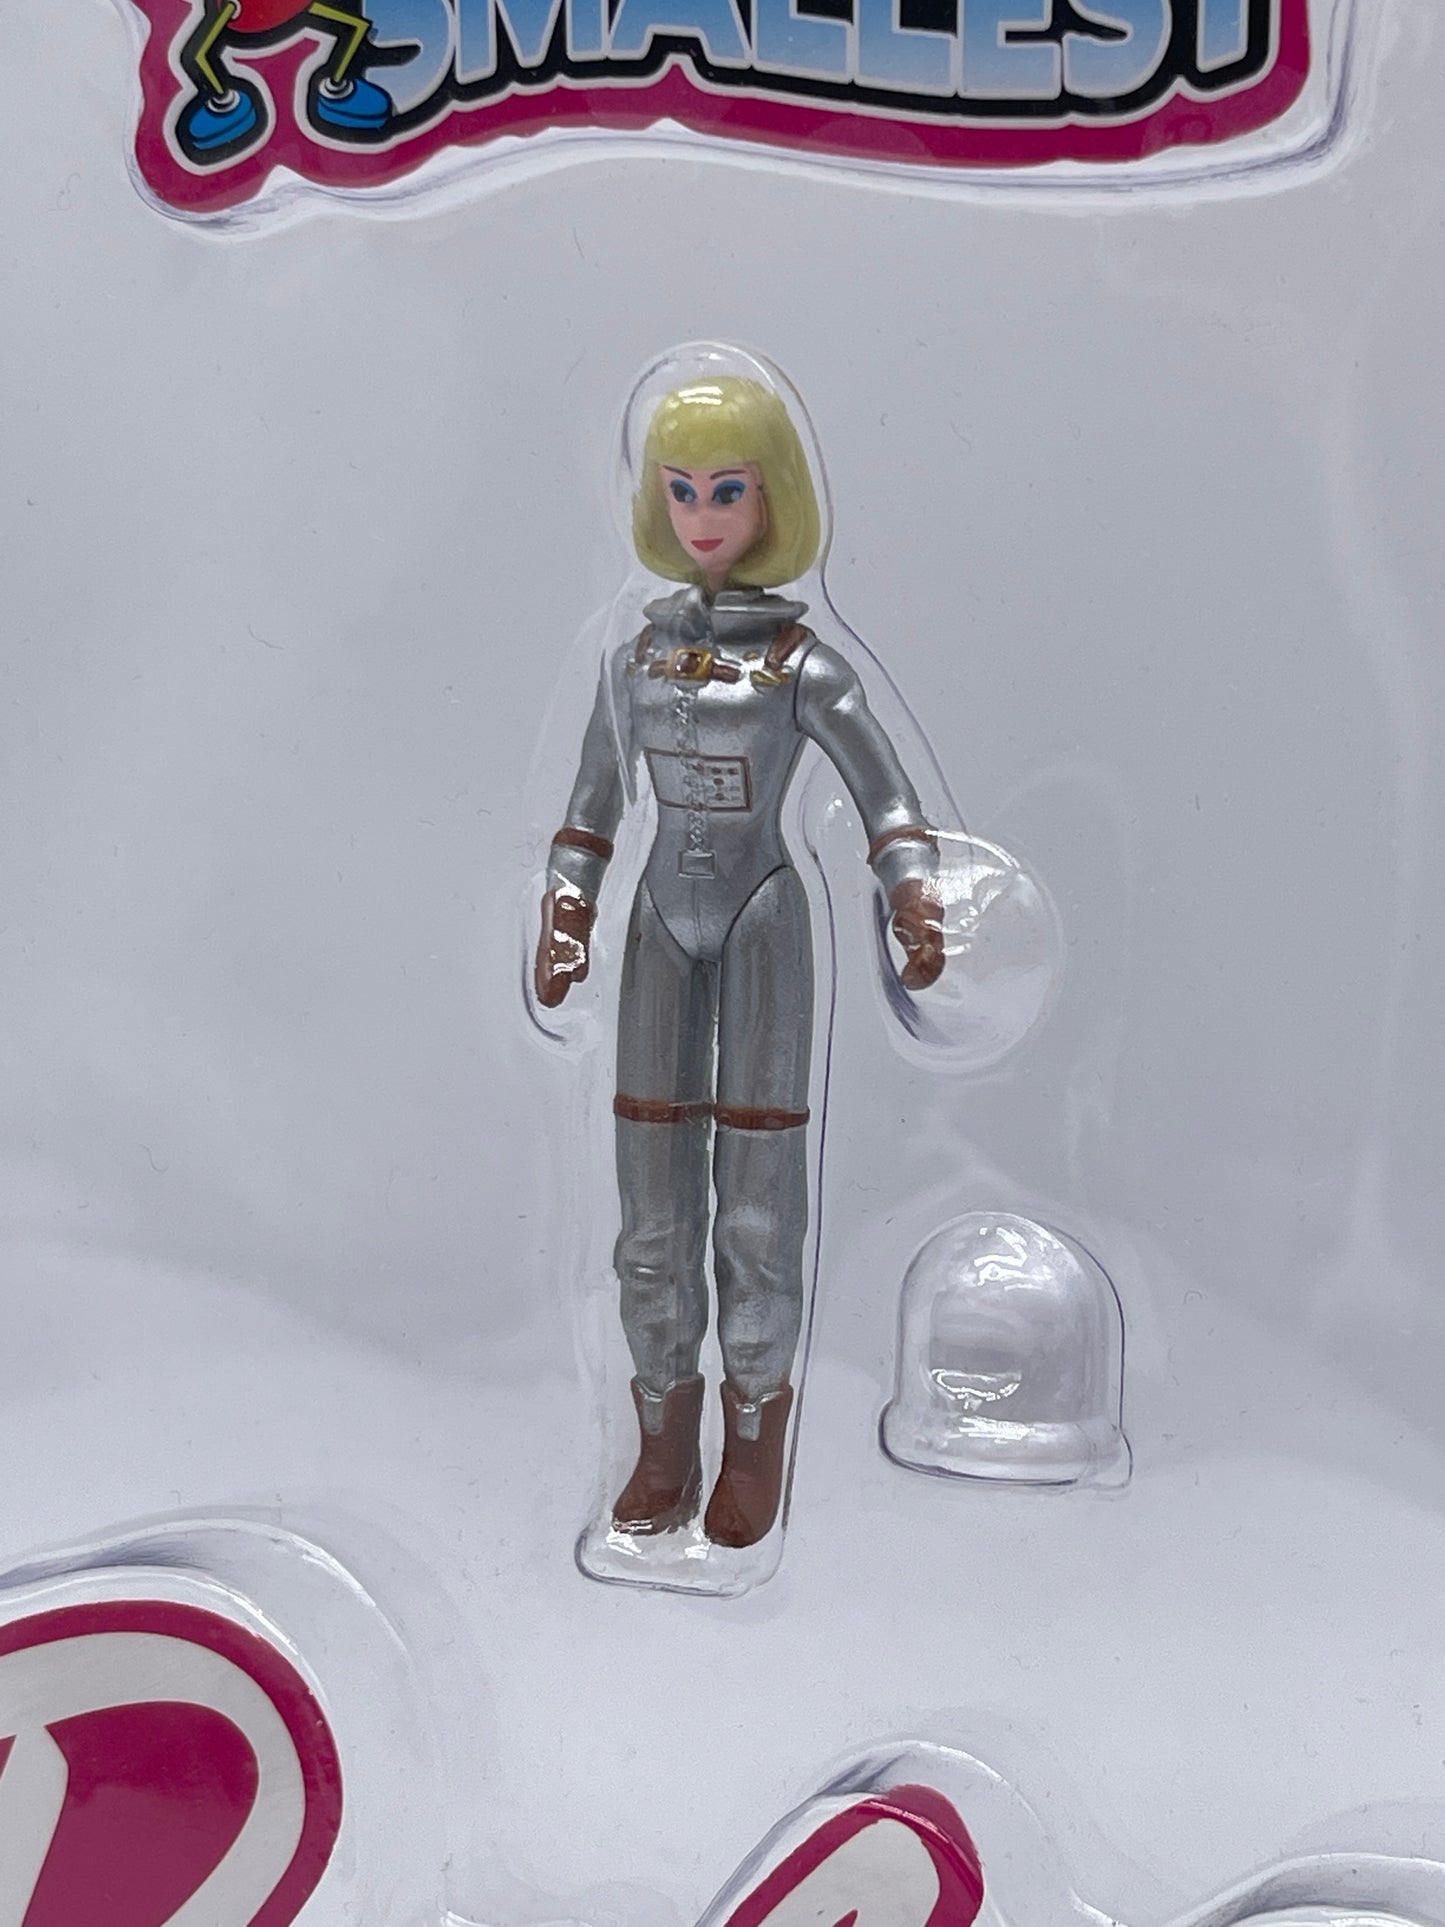 Worlds Smallest - 1965 Barbie Series 2 Mattel + Doll Stand 2019